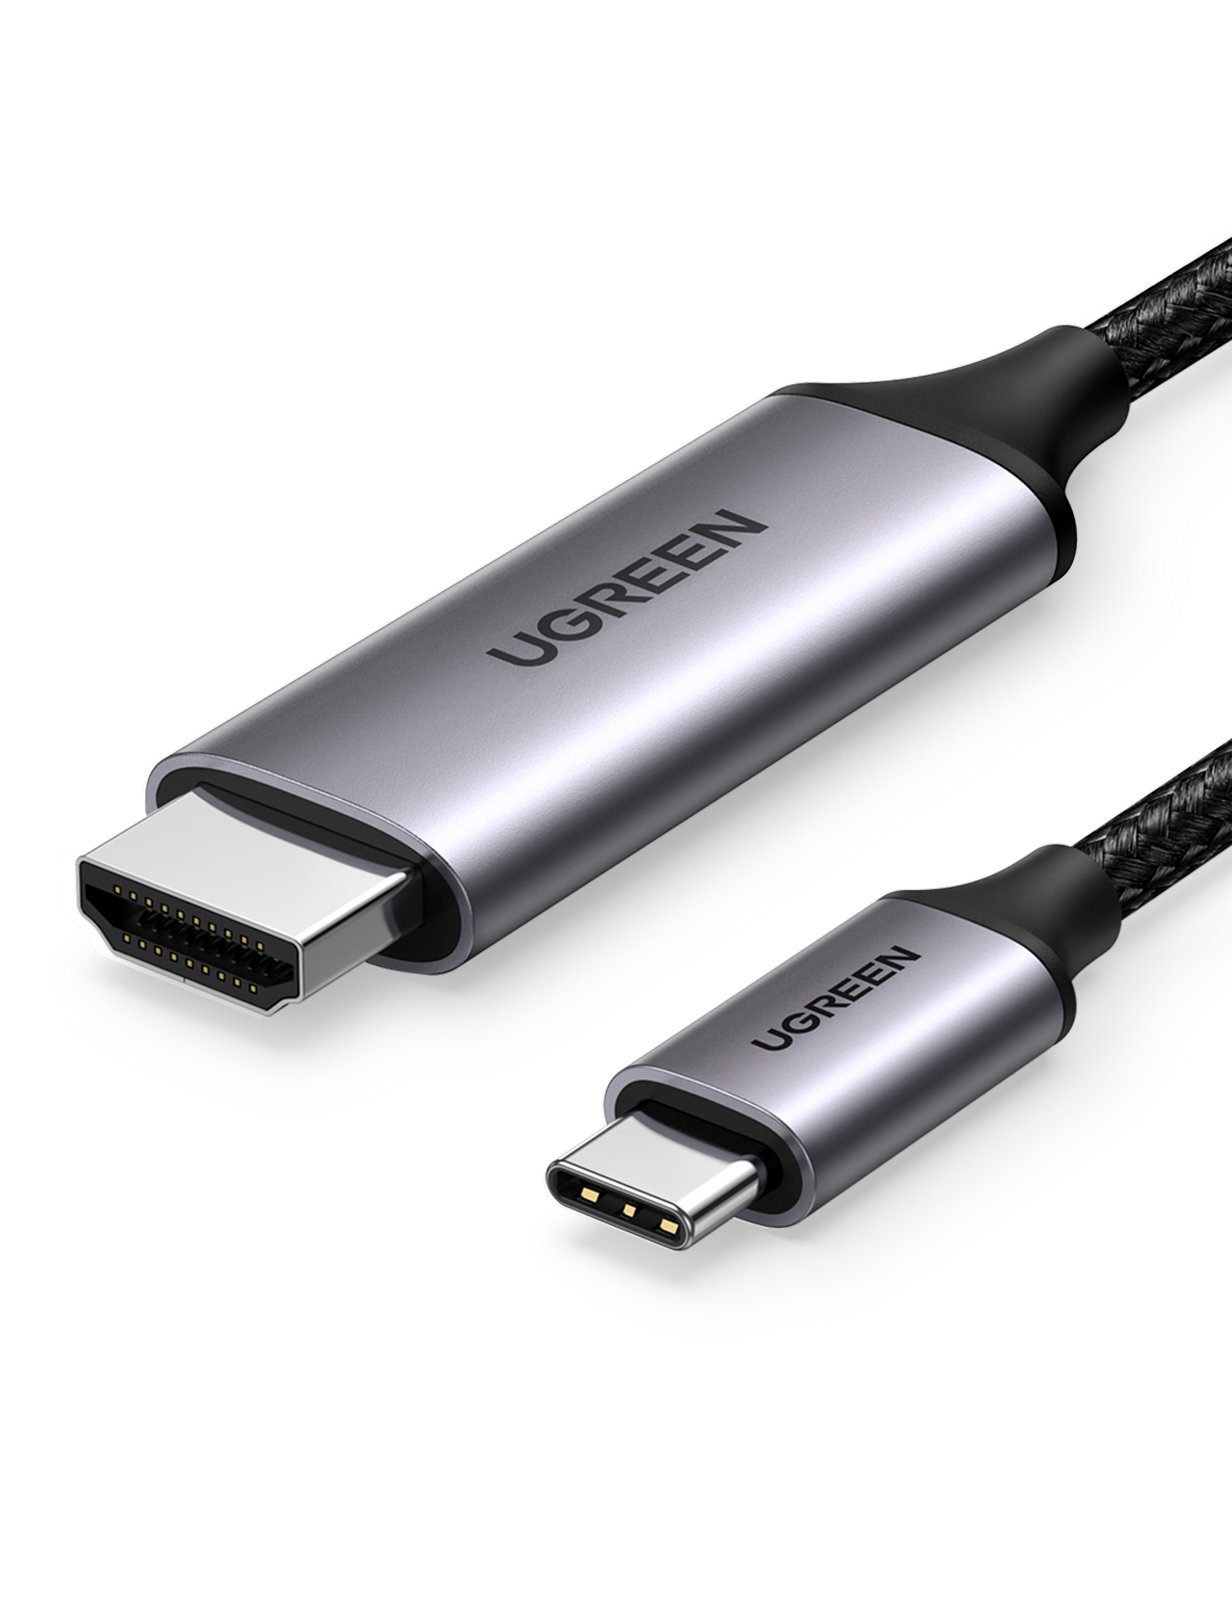 UGREEN Audio- & Video-Adapter USB-C zu HDMI Typ A, 200 cm, USB C auf HDMI  Kabel 4K 60Hz Thunderbolt 3/Typ C auf HDMI Kabel UHD [Geflochten,  Aluminiumlegierung] kompatibel mit MacBook Pro, iPad